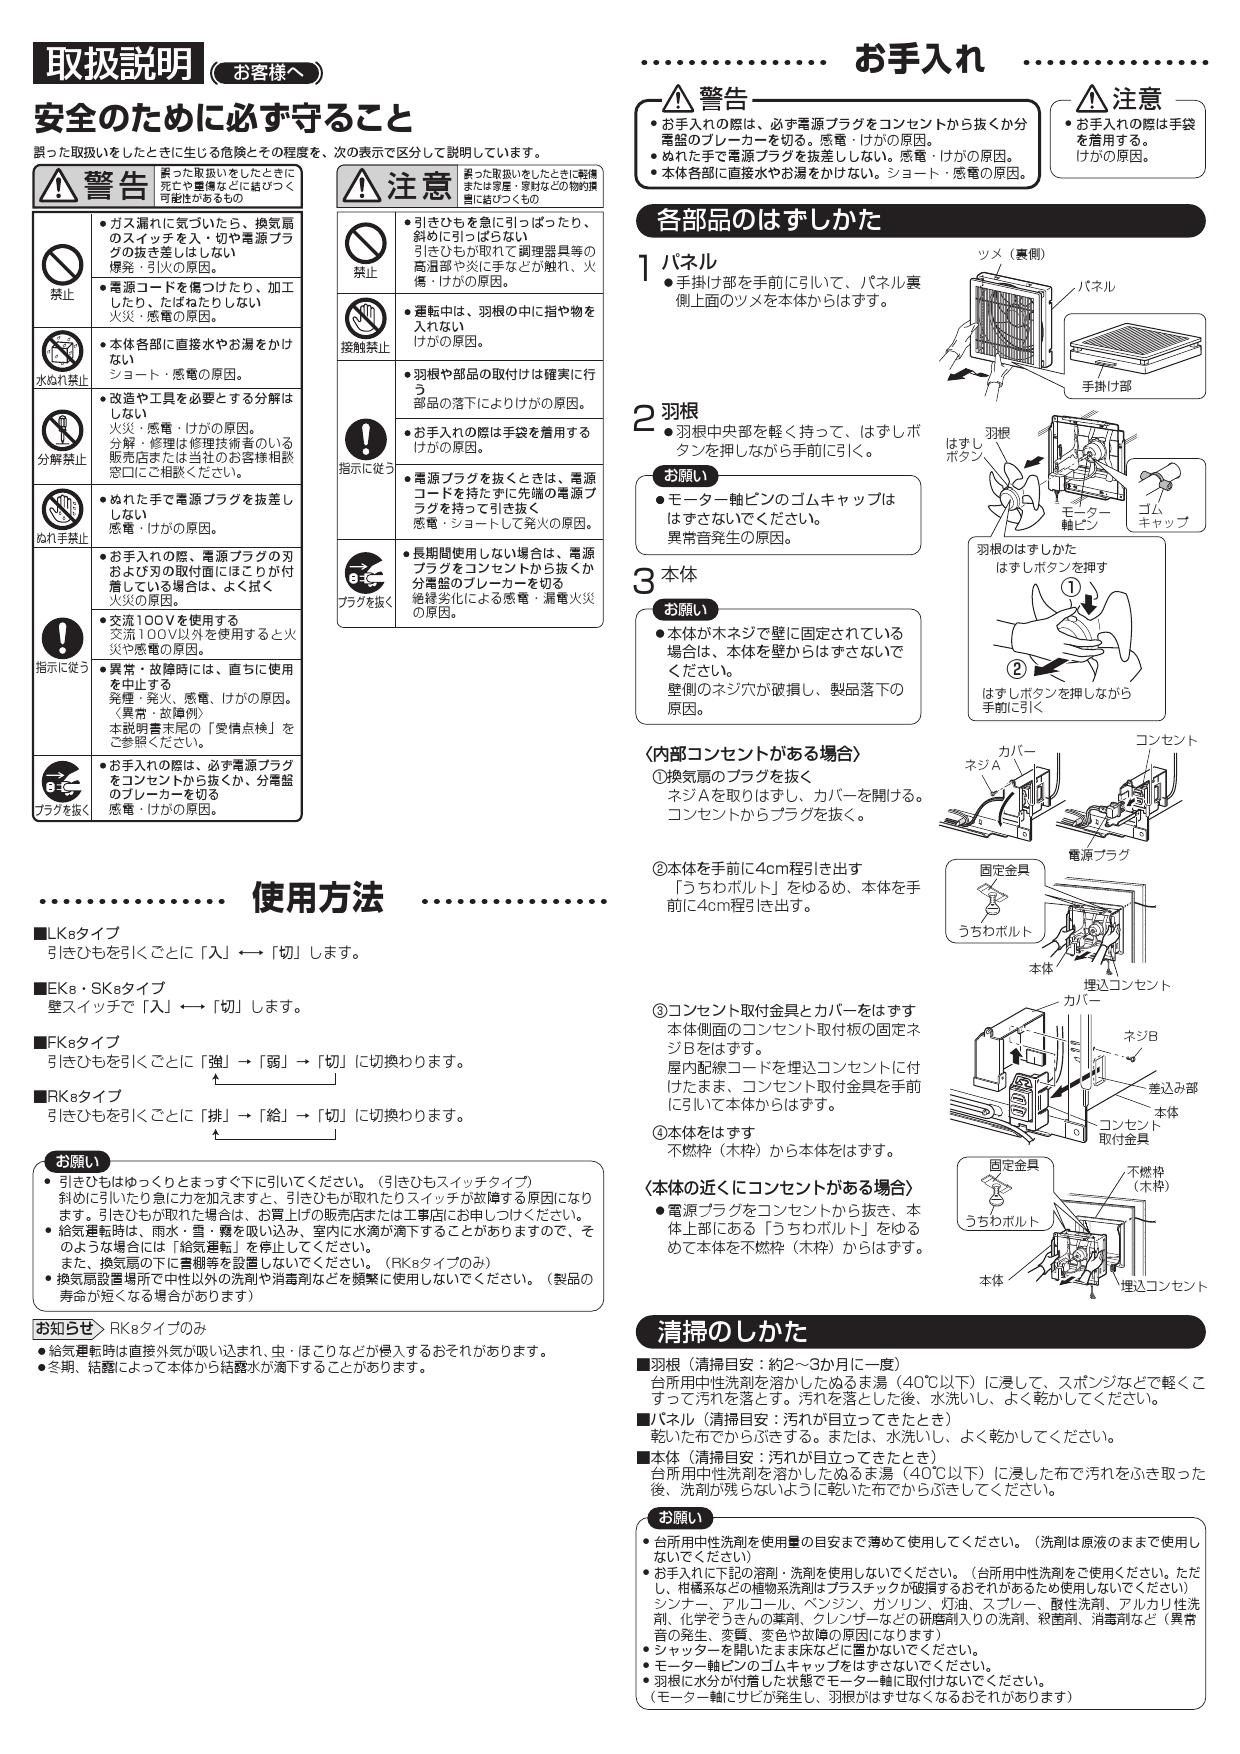 三菱電機 EX-30FK8-C取扱説明書 納入仕様図 通販 プロストア ダイレクト